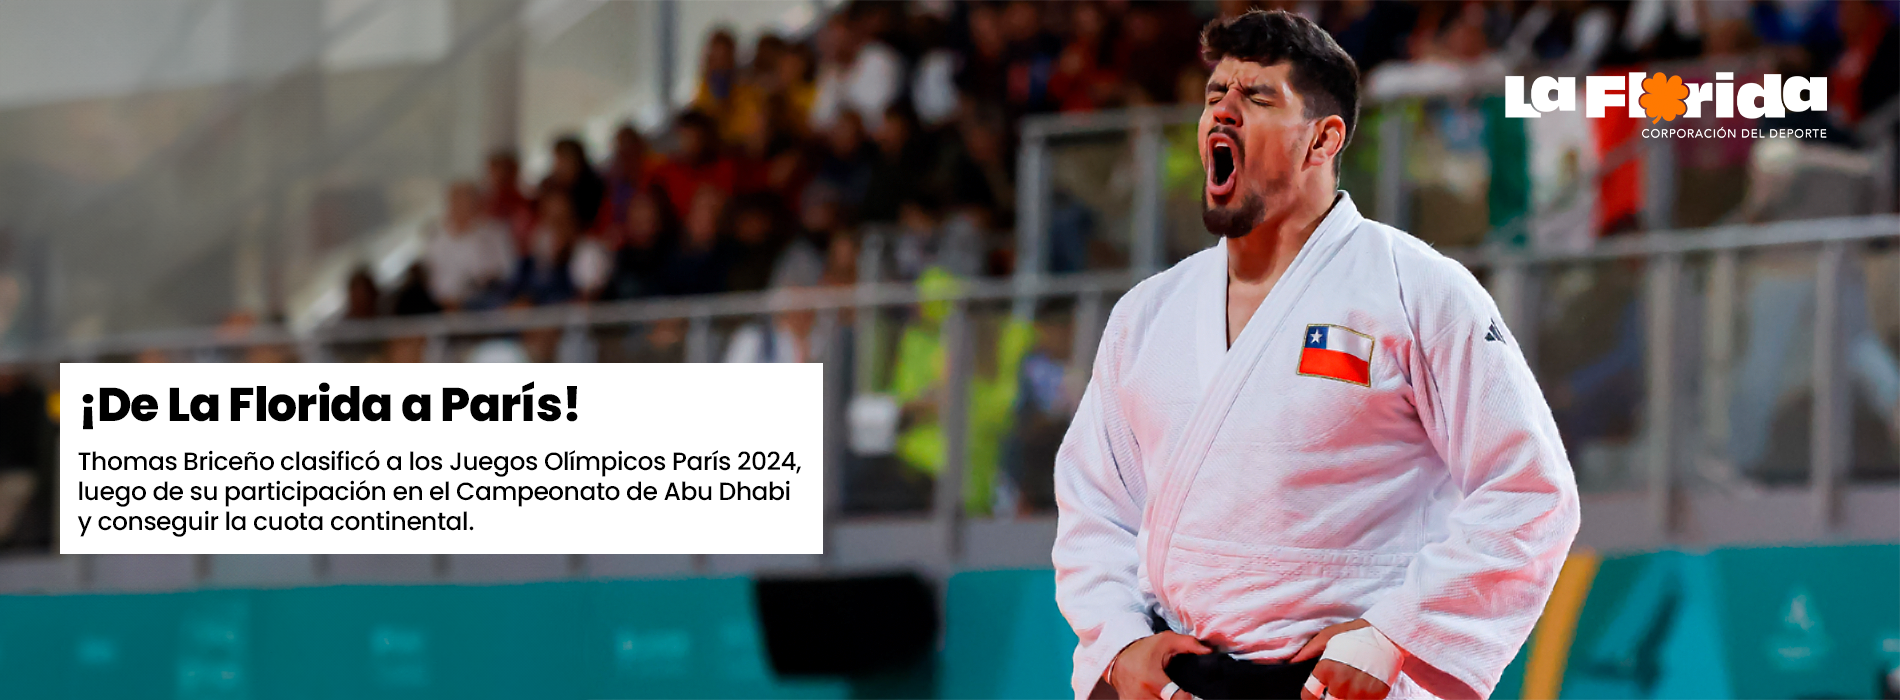 Thomas Briceño clasificó a los Juegos Olímpicos París 2024